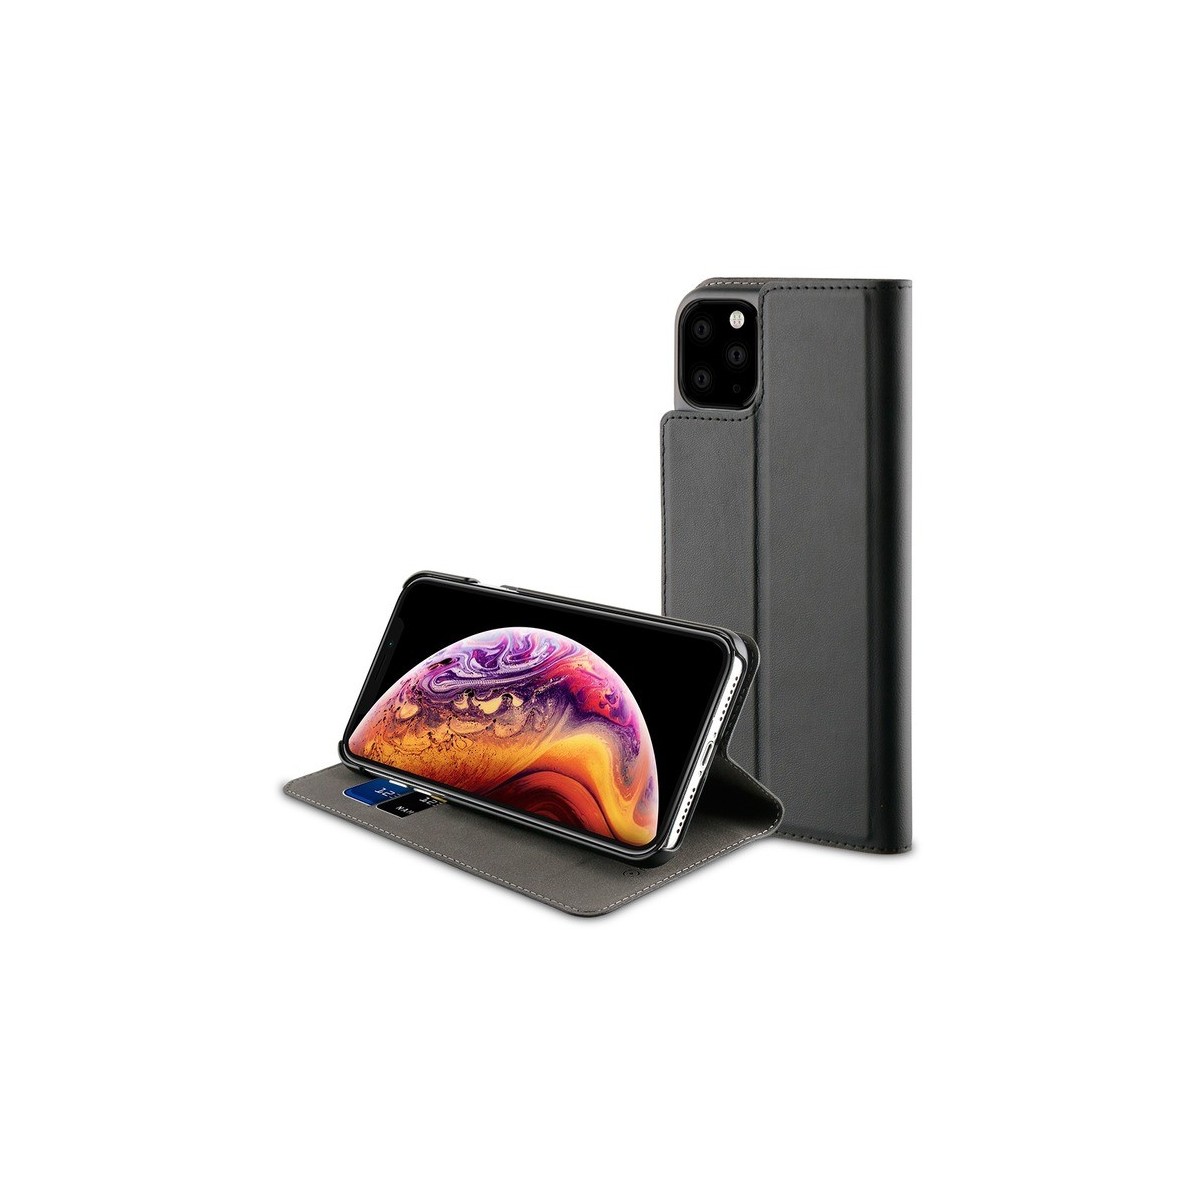 Etui compatible iPhone 11 Pro porte cartes Noir - Muvit